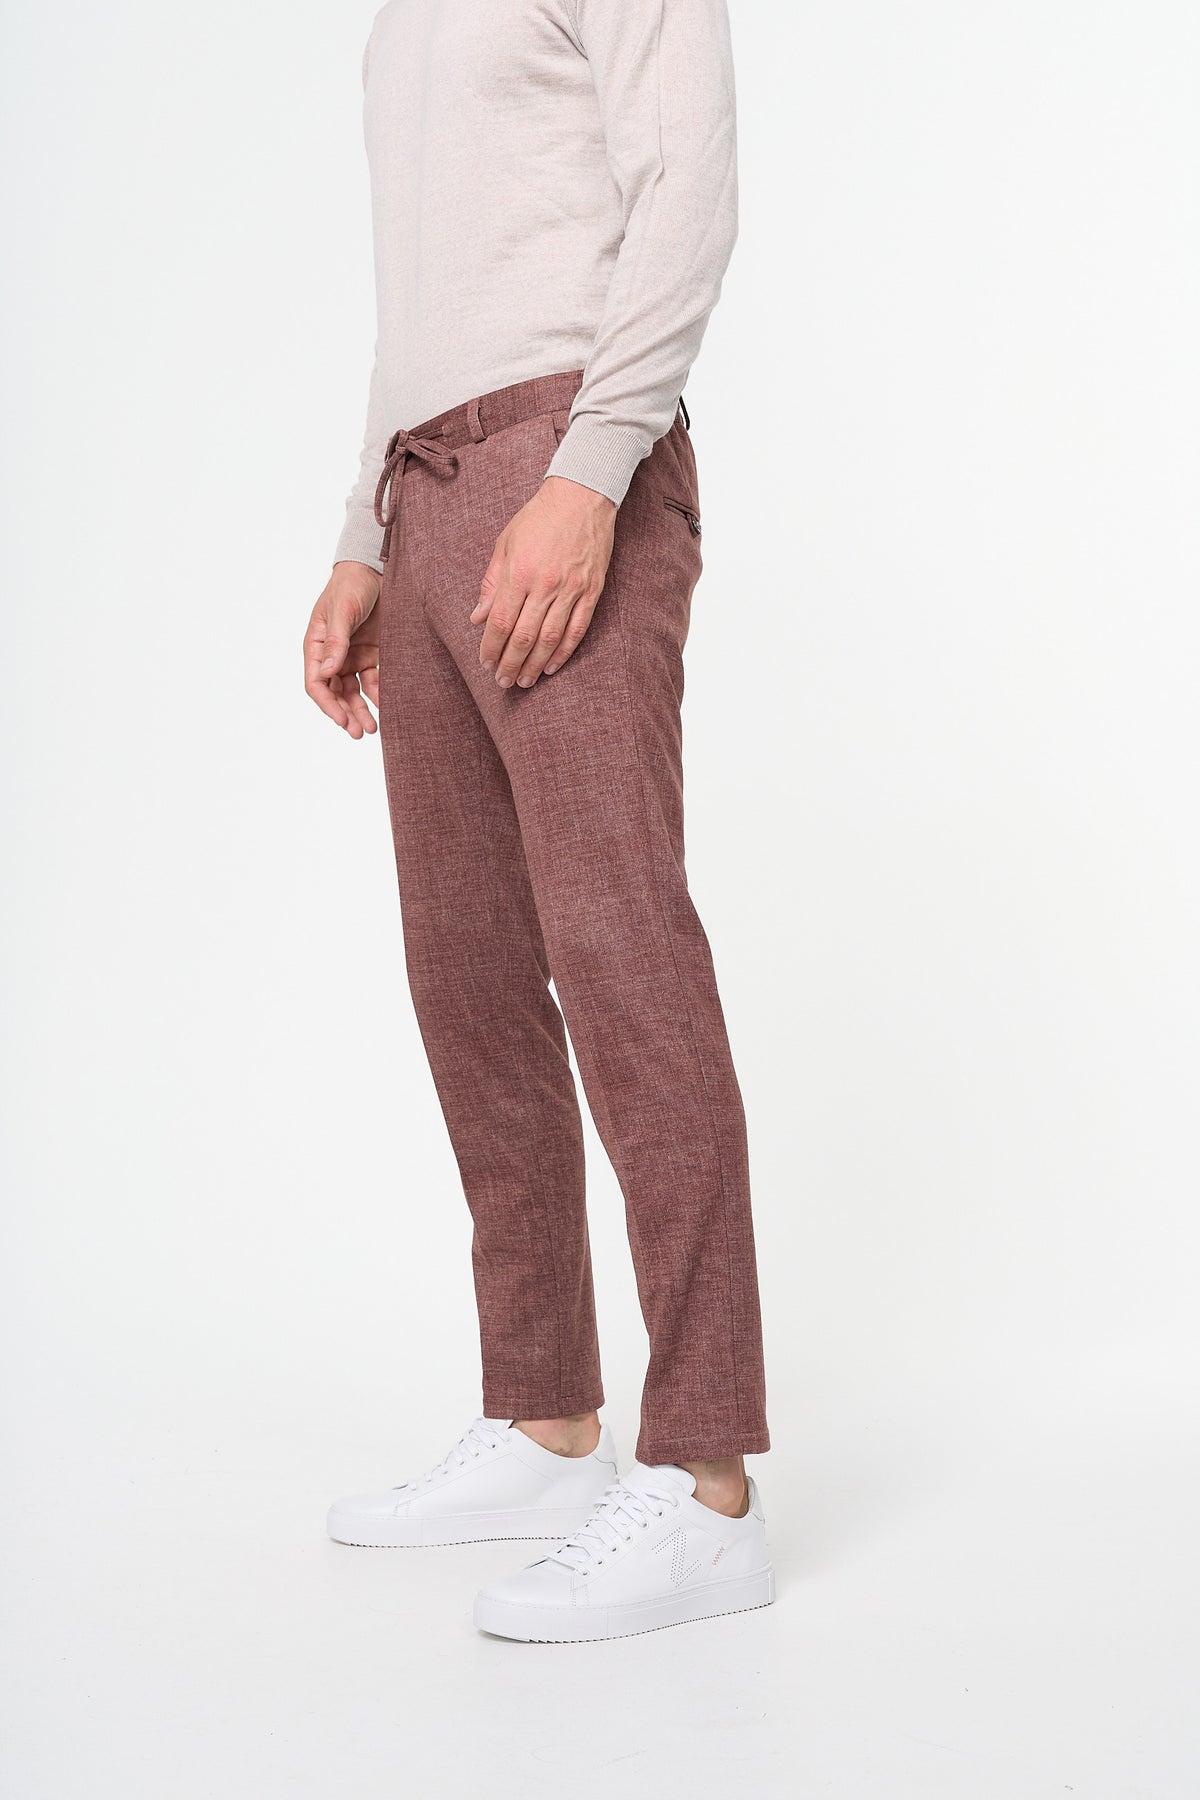 Jersey Suit Pants DiSpartaflex 221605-850